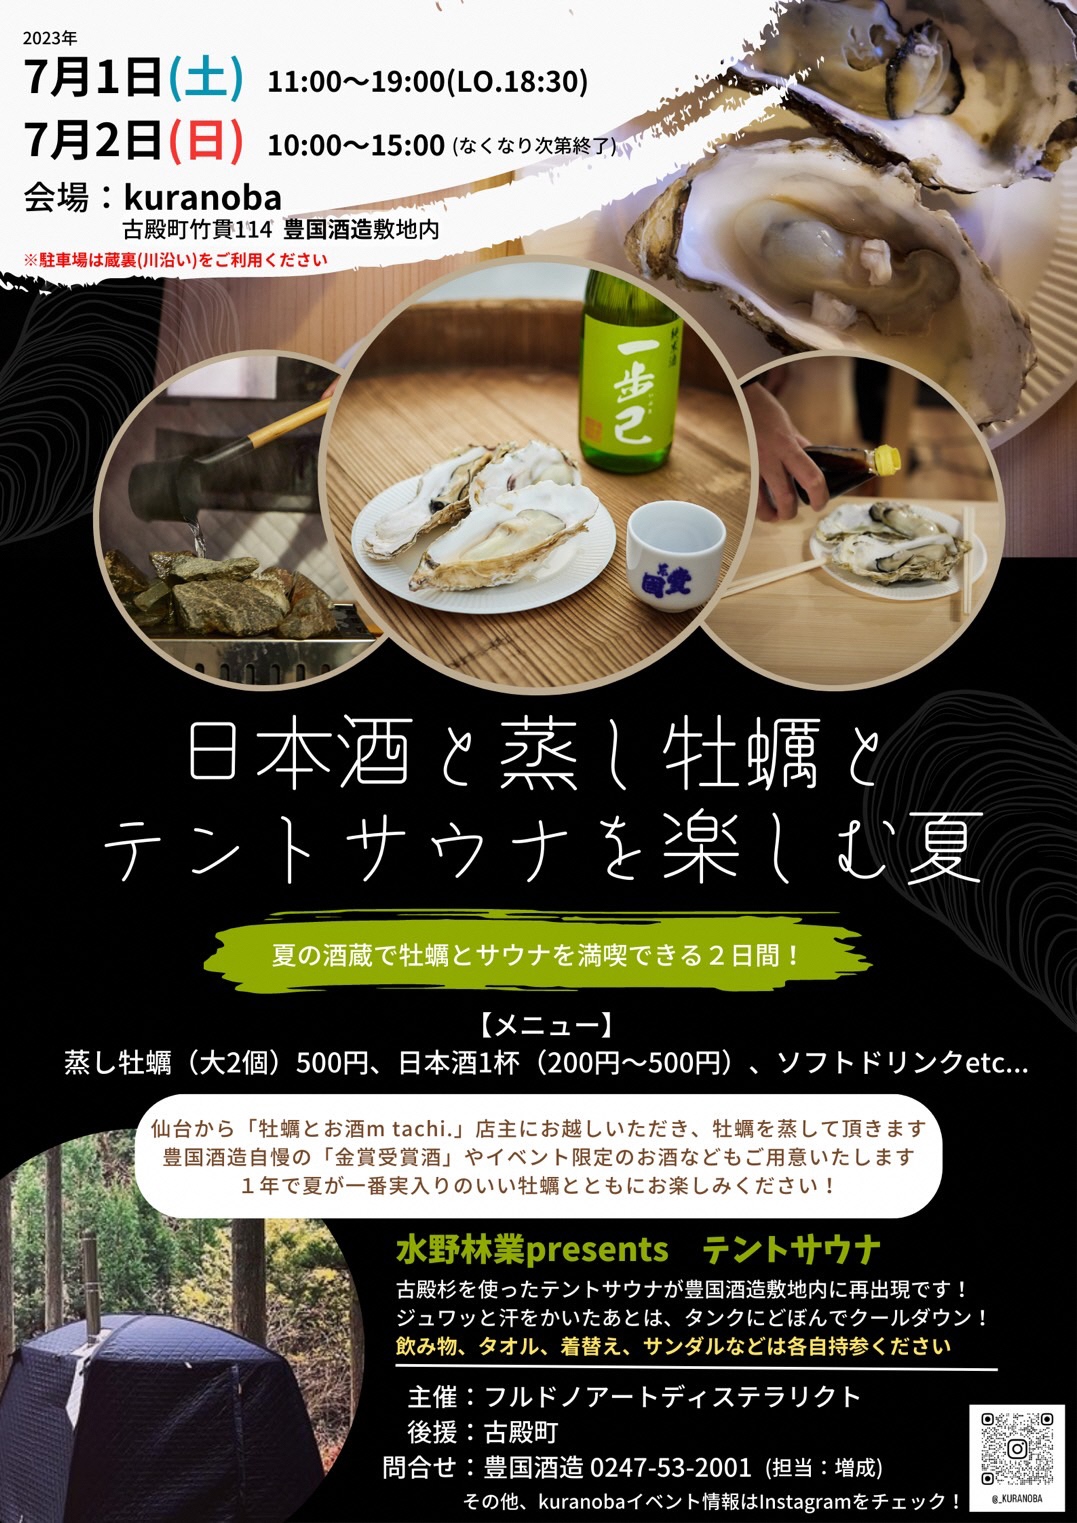 日本酒と蒸し牡蠣とテントサウナを楽しむ夏◆7月1日(土)・2日(日)